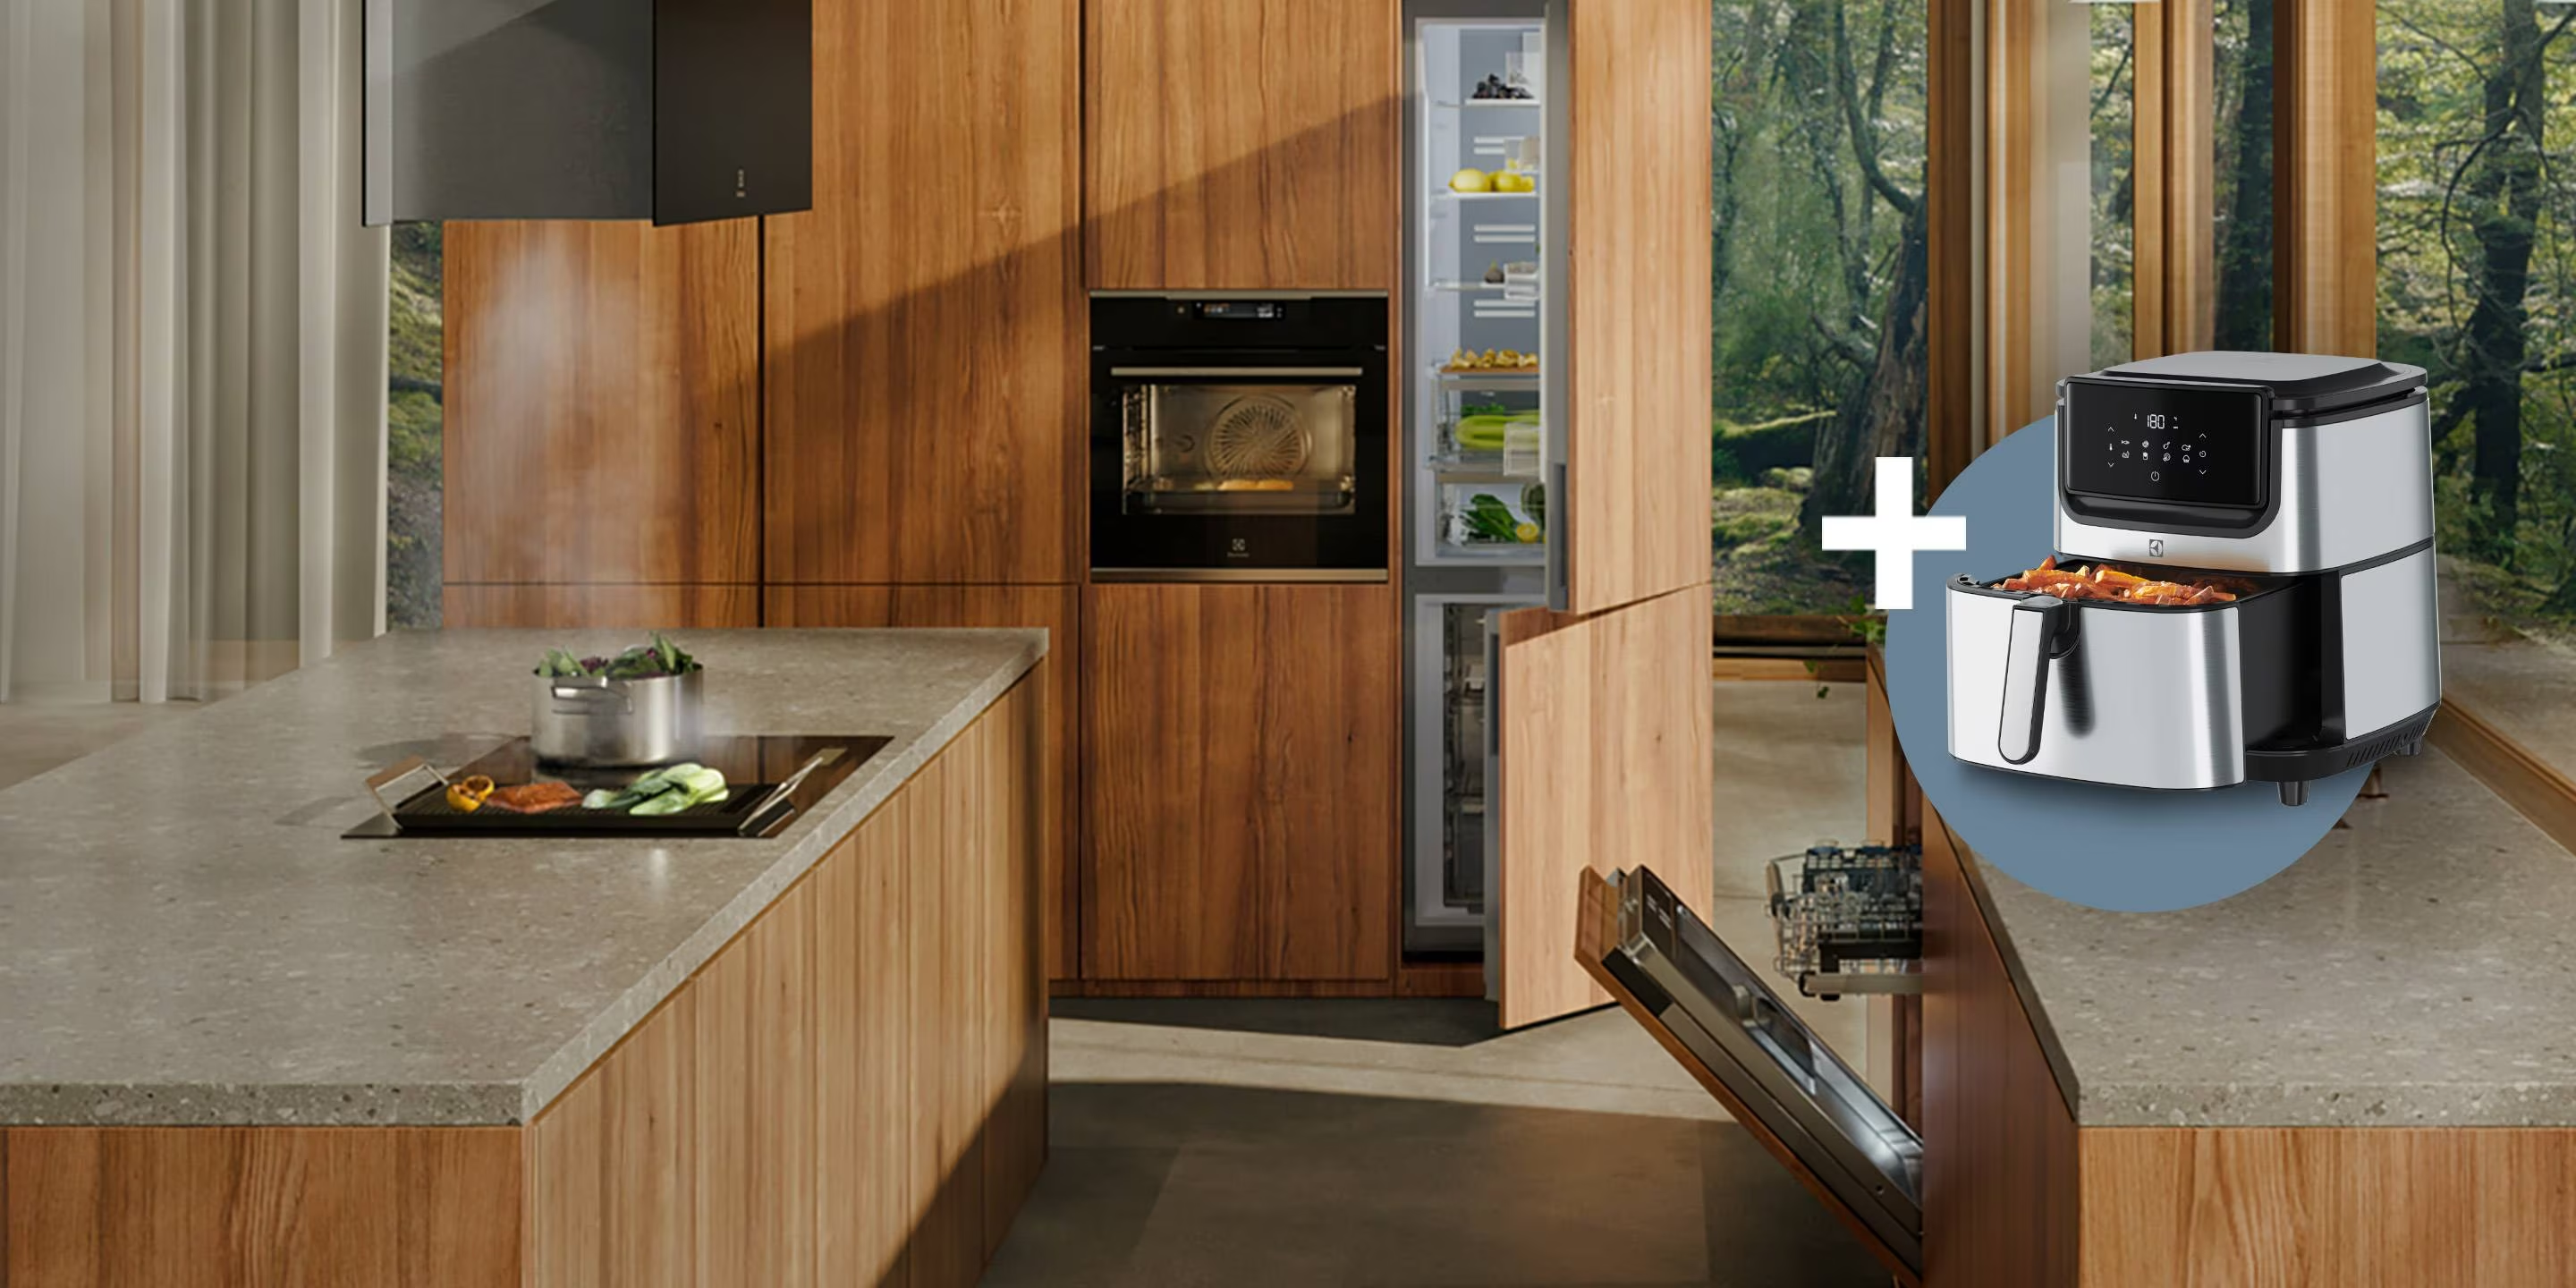 Beépíthető konyhai készülékek ráadás Air Fryer sütővel